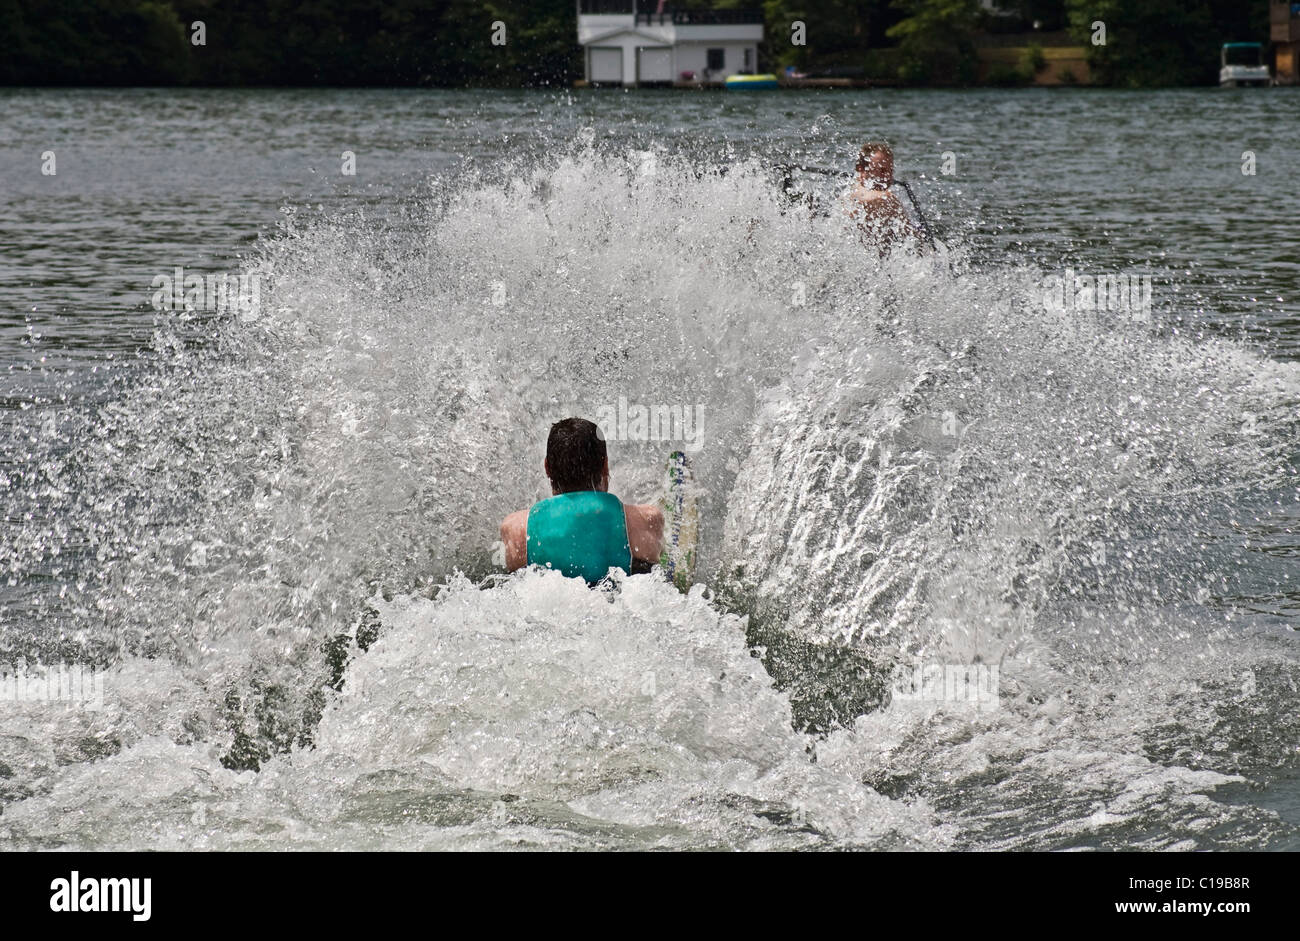 Uomo su uno sci da slalom tirati fuori dall'acqua. Il conducente della barca è appena visibile dietro lo spray. Foto Stock